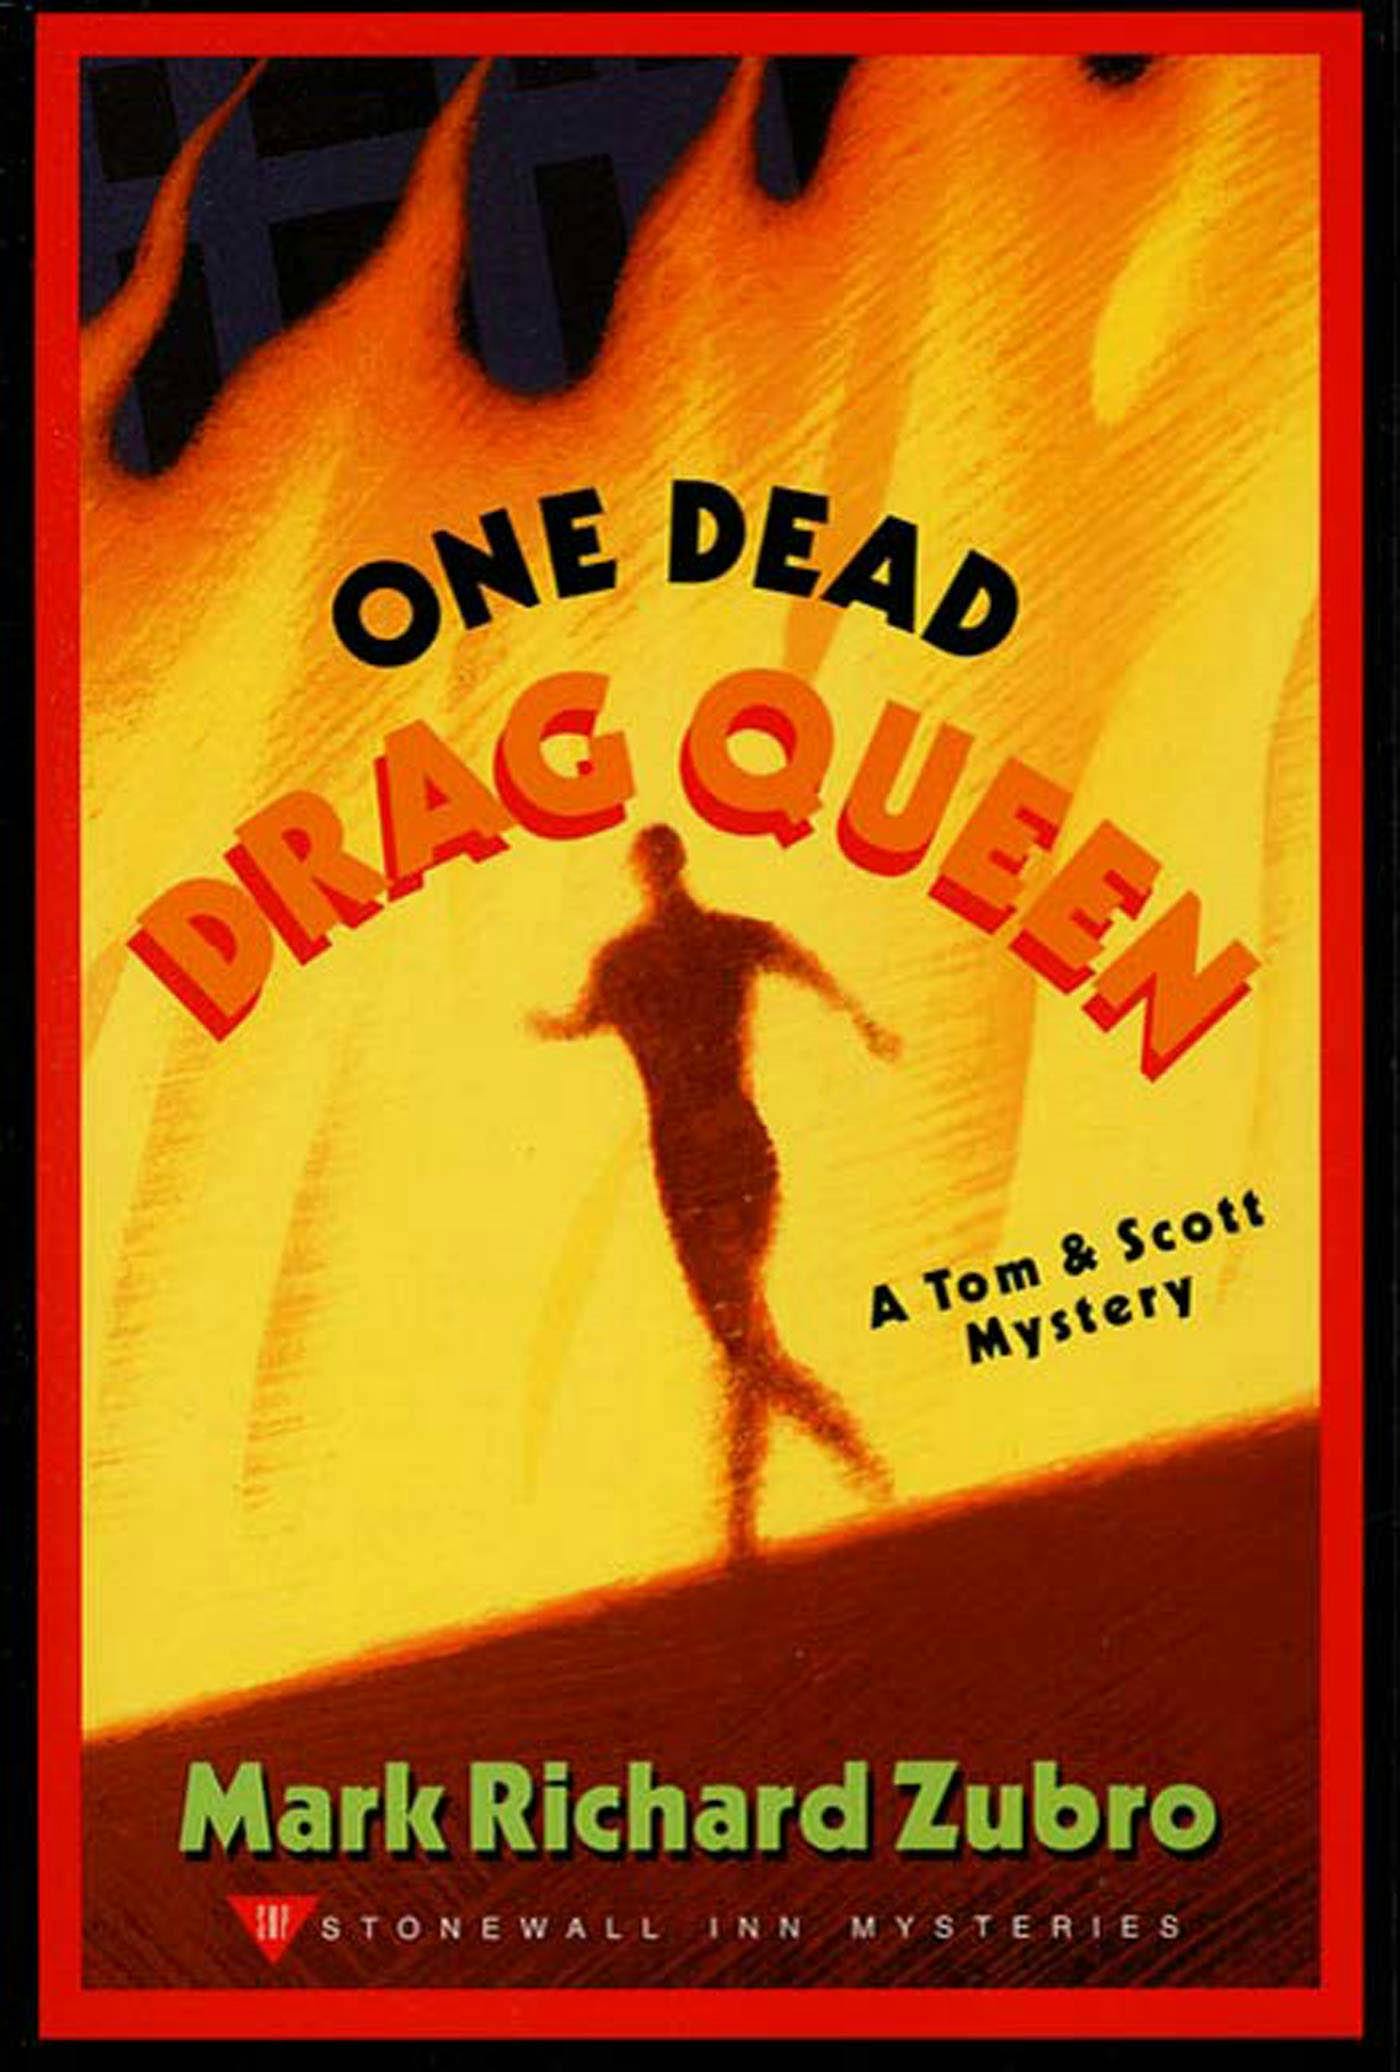 One Dead Drag Queen